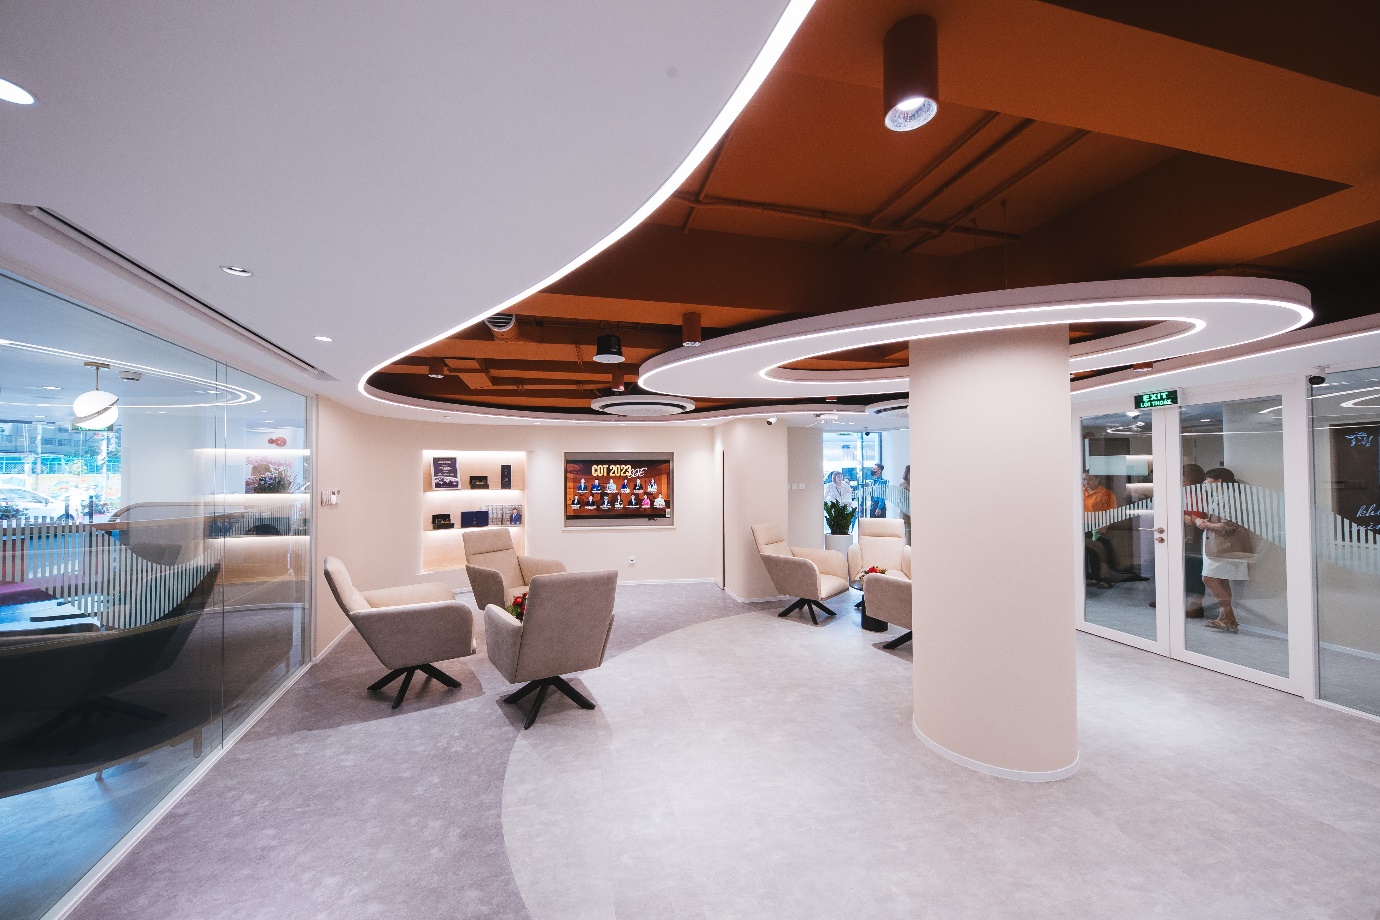 Trung tâm chăm sóc khách hàng mới của Prudential - không gian để tư vấn viên mang lại trải nghiệm tốt nhất cho khách hàng - Ảnh 3.